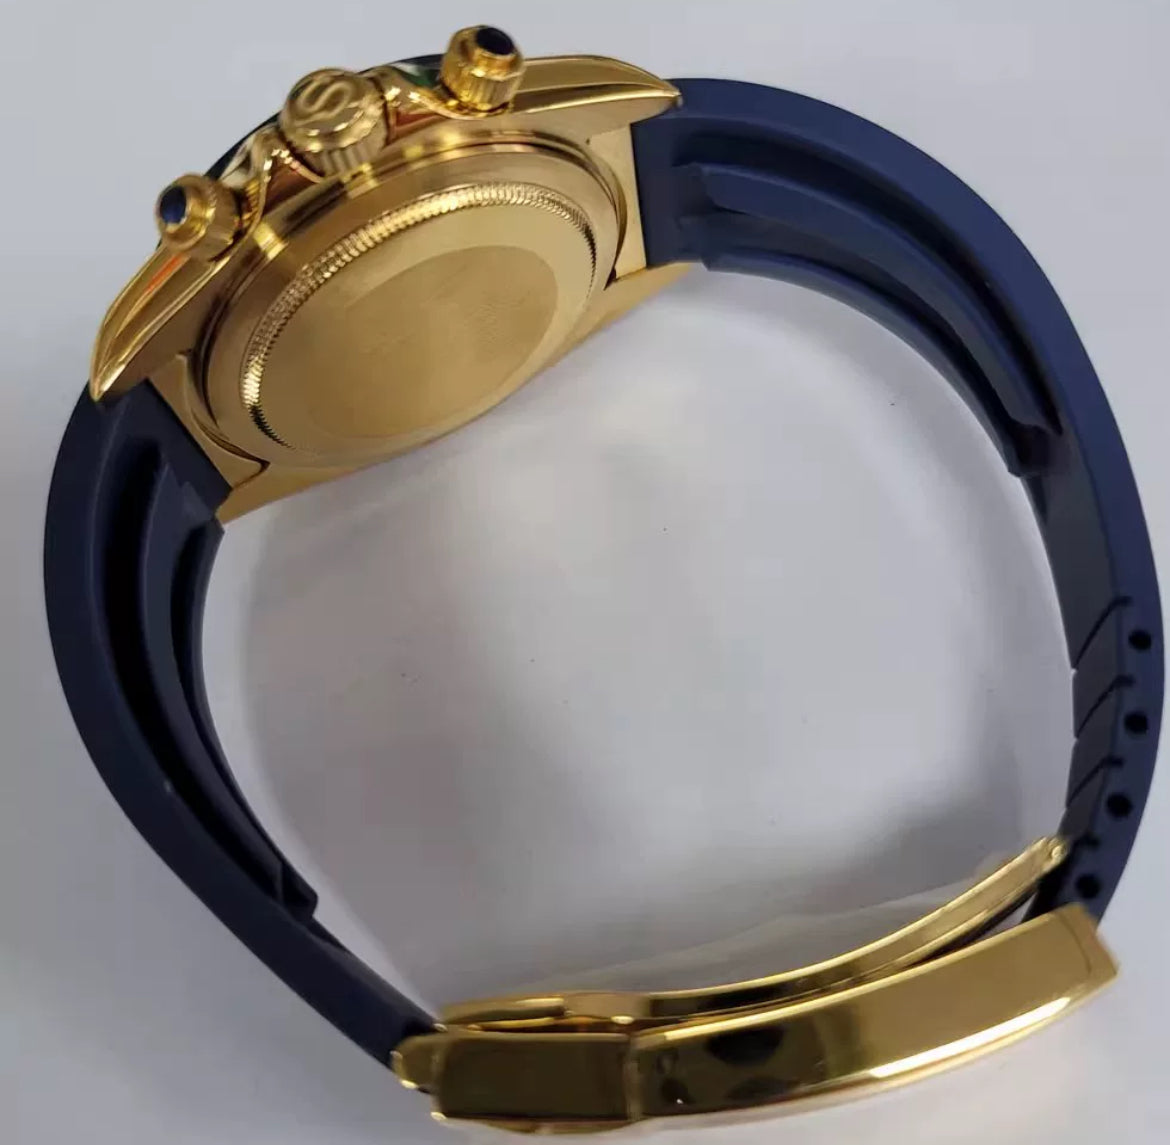 Seiko mod blue gold Daytona VK63 meca quartz chronograph watch